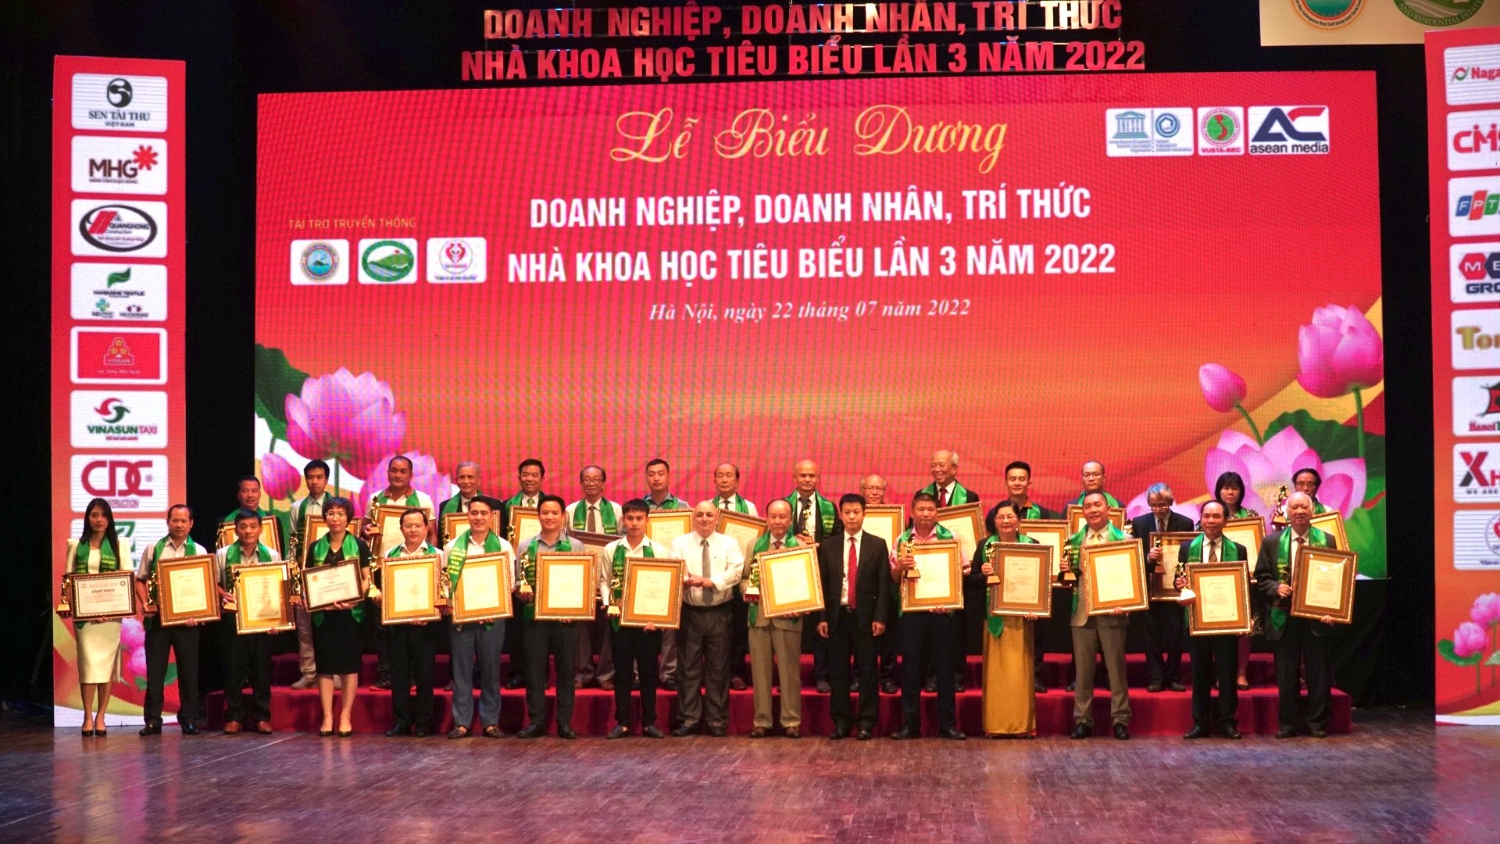 Tập đoàn Kim Nam vinh dự được nhận bằng khen biểu dương Doanh nghiệp, Doanh nhân, Tri thức, Nhà khoa học tiêu biểu lần 3 năm 2022